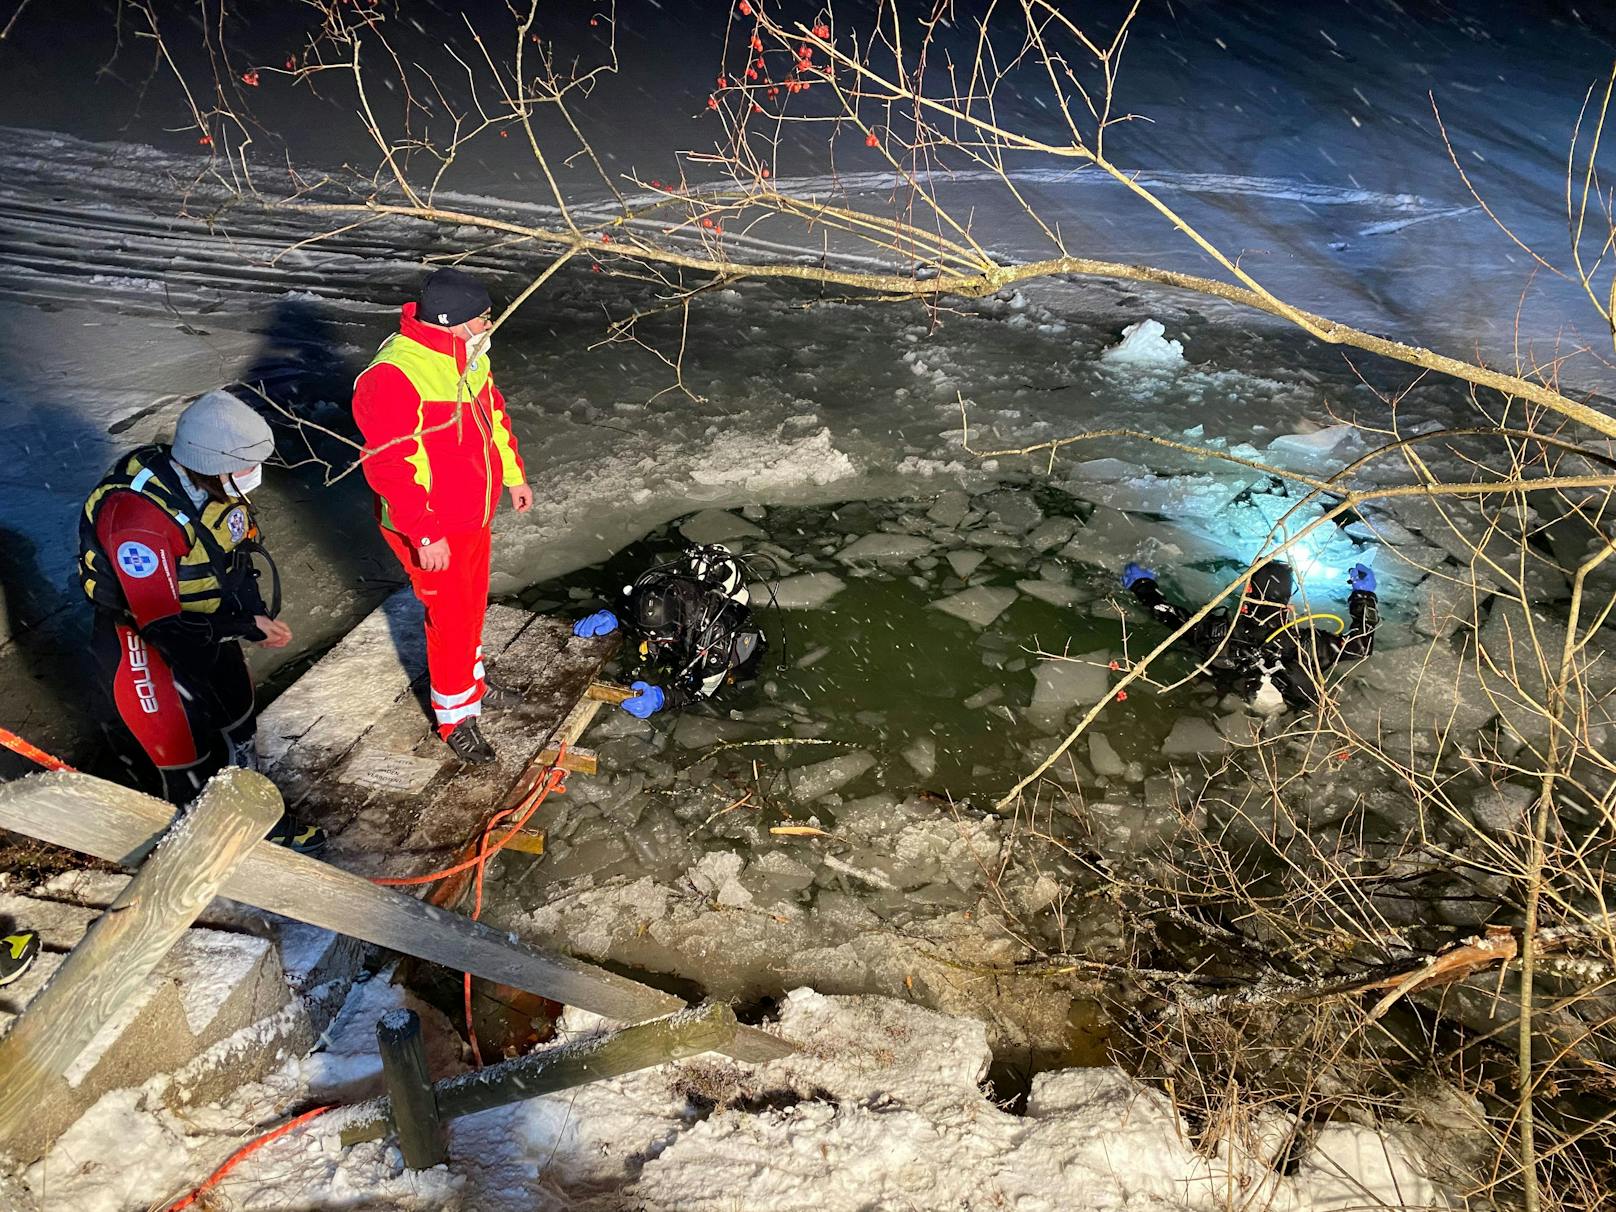 Spektakulärer Unfall in der Nacht auf Samstag im Gemeindegebiet von Walchsee. Ein Seat-Lenker kam von der Straße ab und stürzte in einen See. 